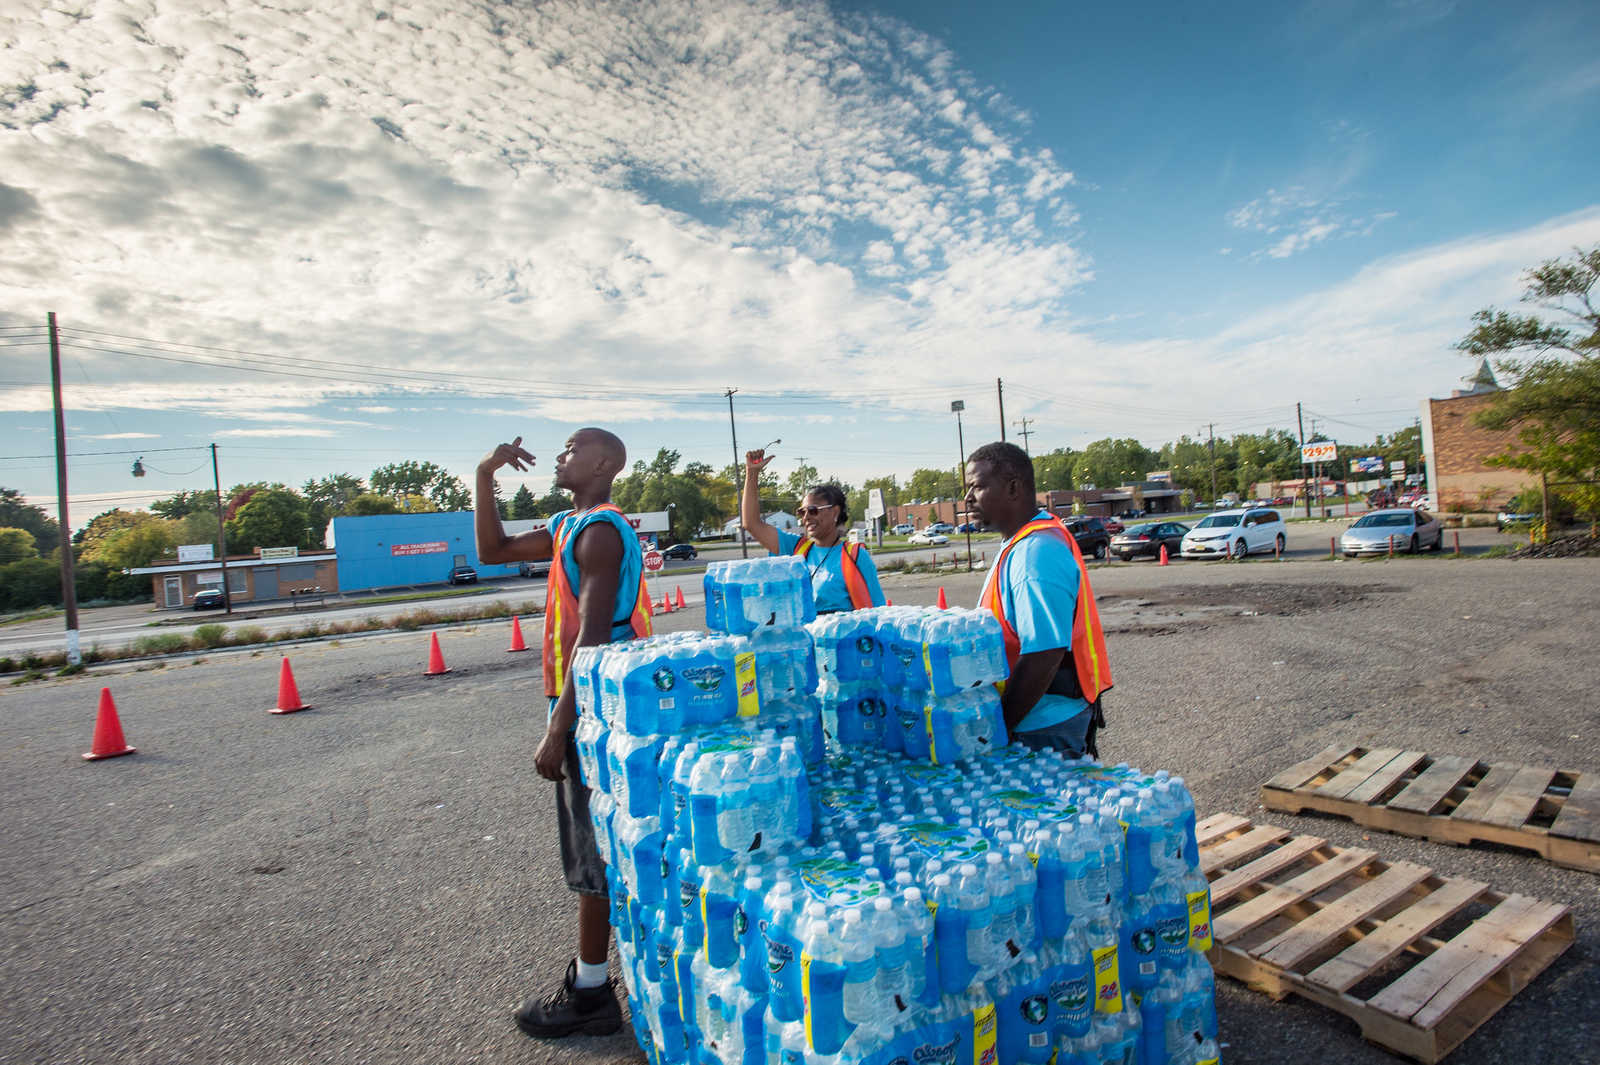 Trinkwasserflaschen auf Paletten mit Helfern in orangenen Jacken auf einem Parkplatz in Flint, Michigan, USA. Flint's Wasserkrise führte dazu, dass das Wasser aus dem Wasserhahn nicht mehr bekömmlich war. Himmel blau leicht bewölkt. Helfer sind people of color.